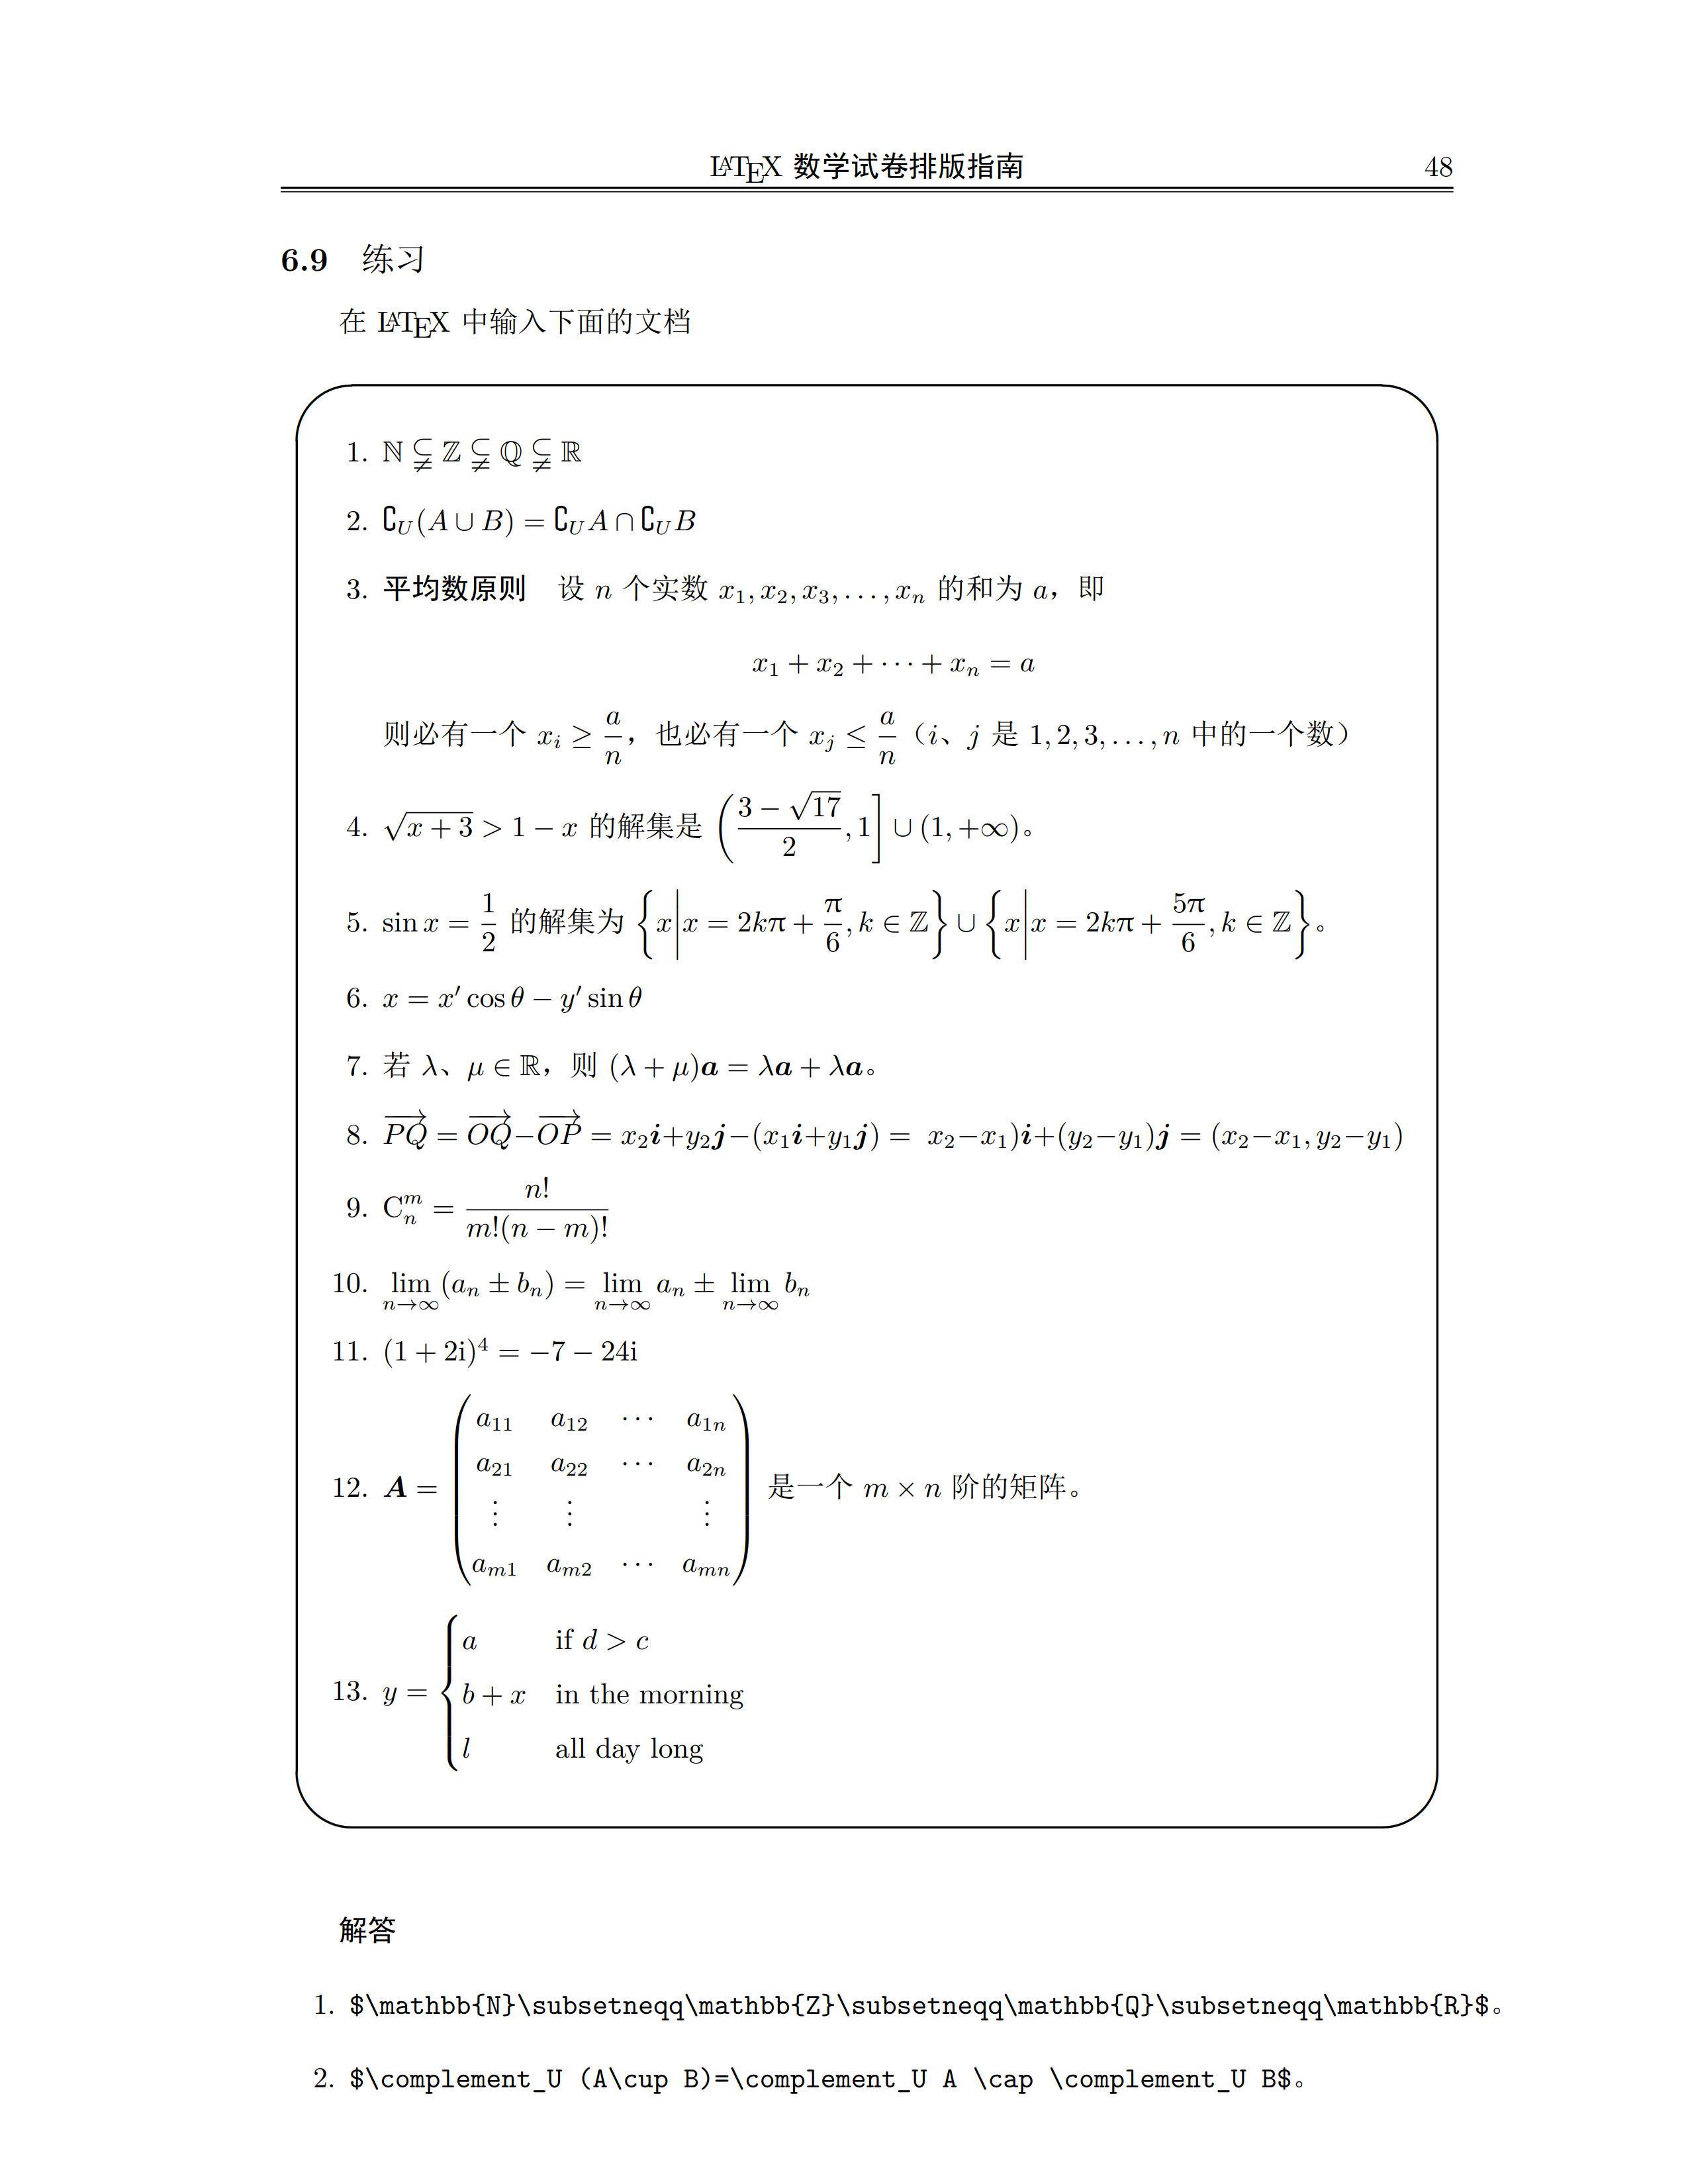 数学试卷排版模板及指南 (盖鹤麟) - 2004年 重制版